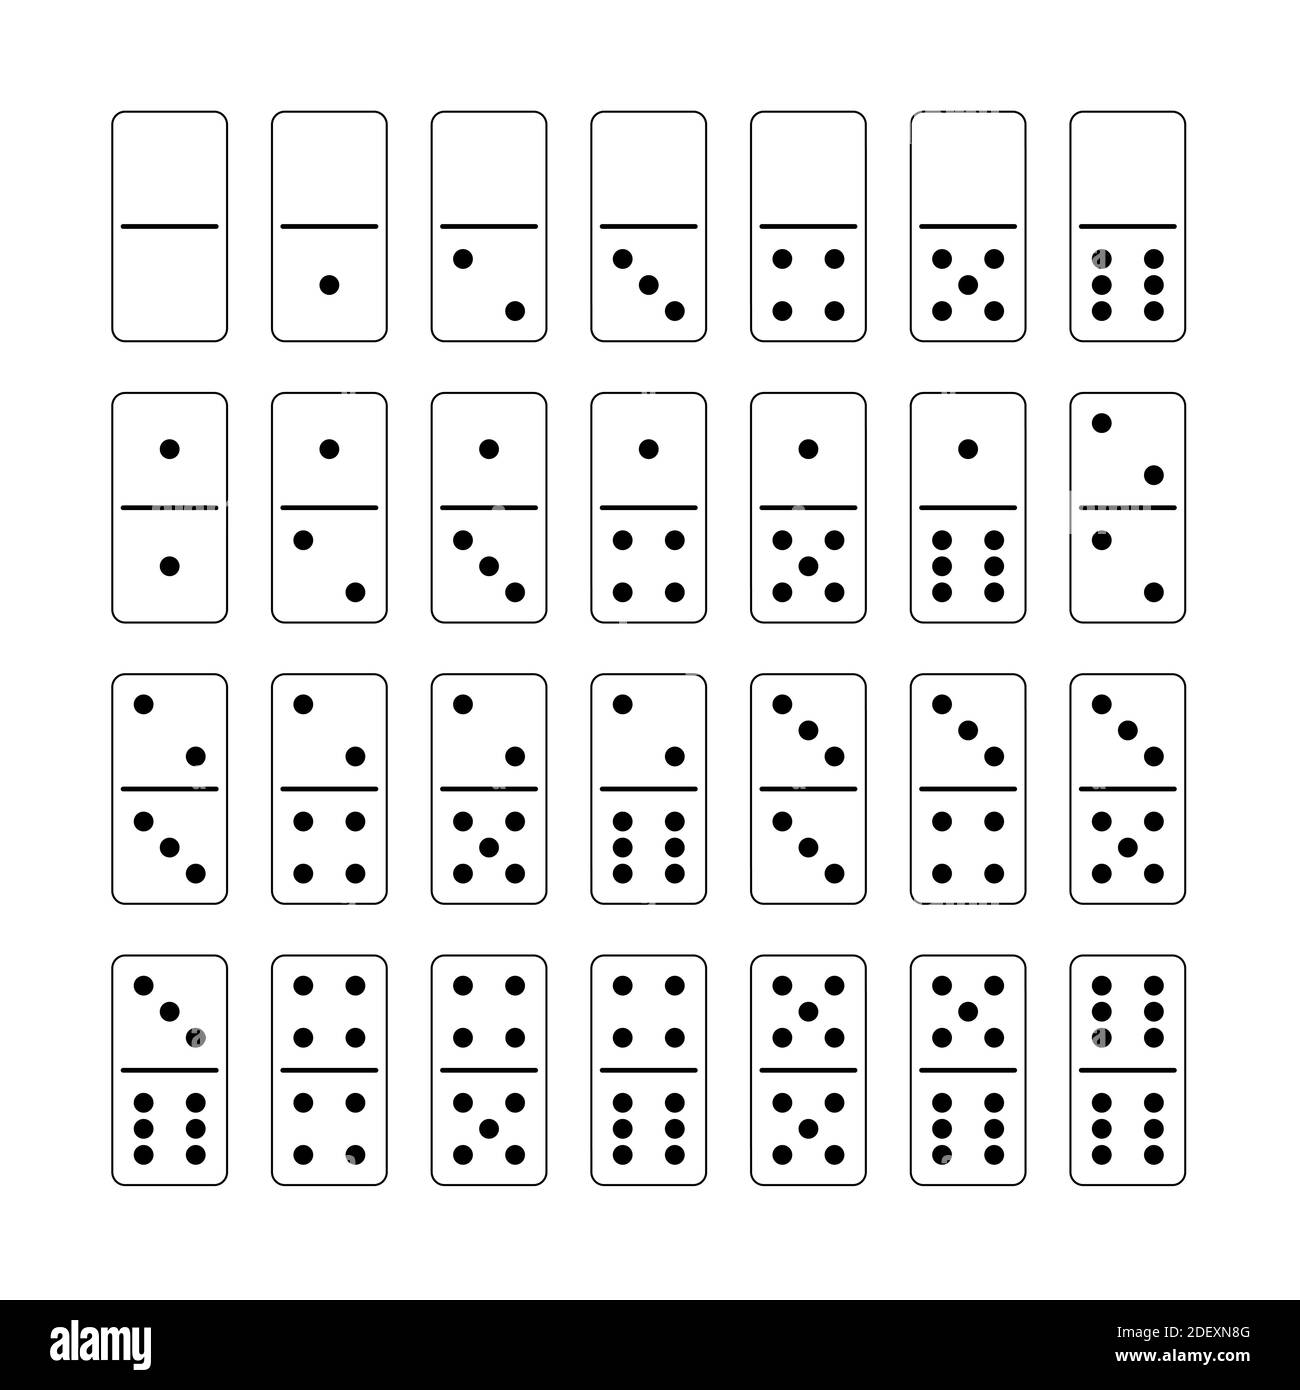 Jeu Domino. Jeu complet assorti, collection de 28 tuiles blanches disposées avec des points noirs - illustration de contour sur fond blanc. Banque D'Images